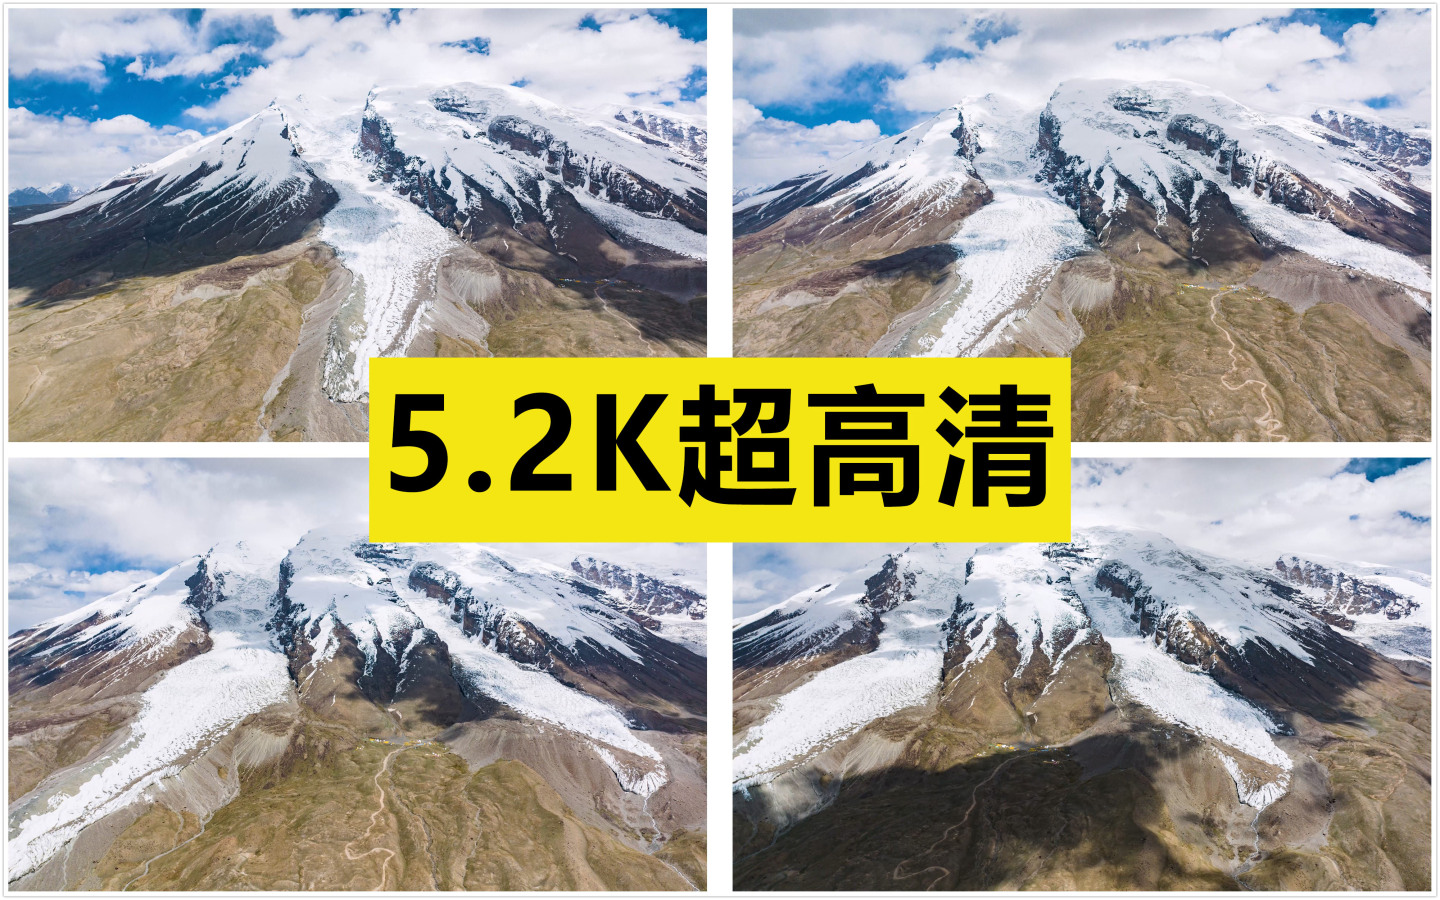 慕士塔格峰冰川航拍 延时 原创5.2K